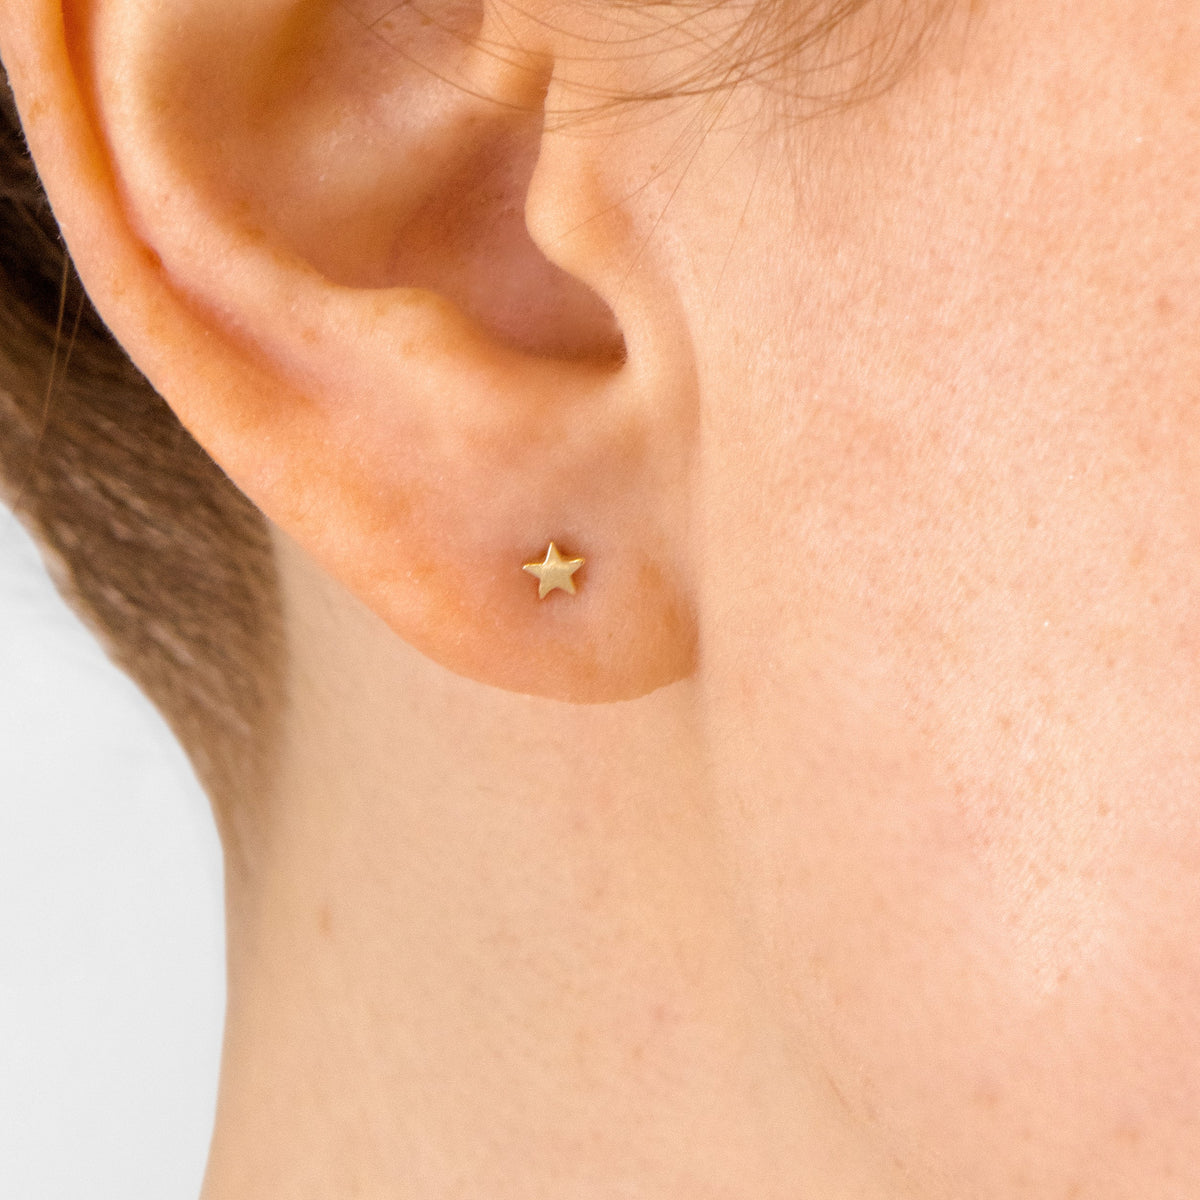 14K Yellow Gold Star Stud Earrings